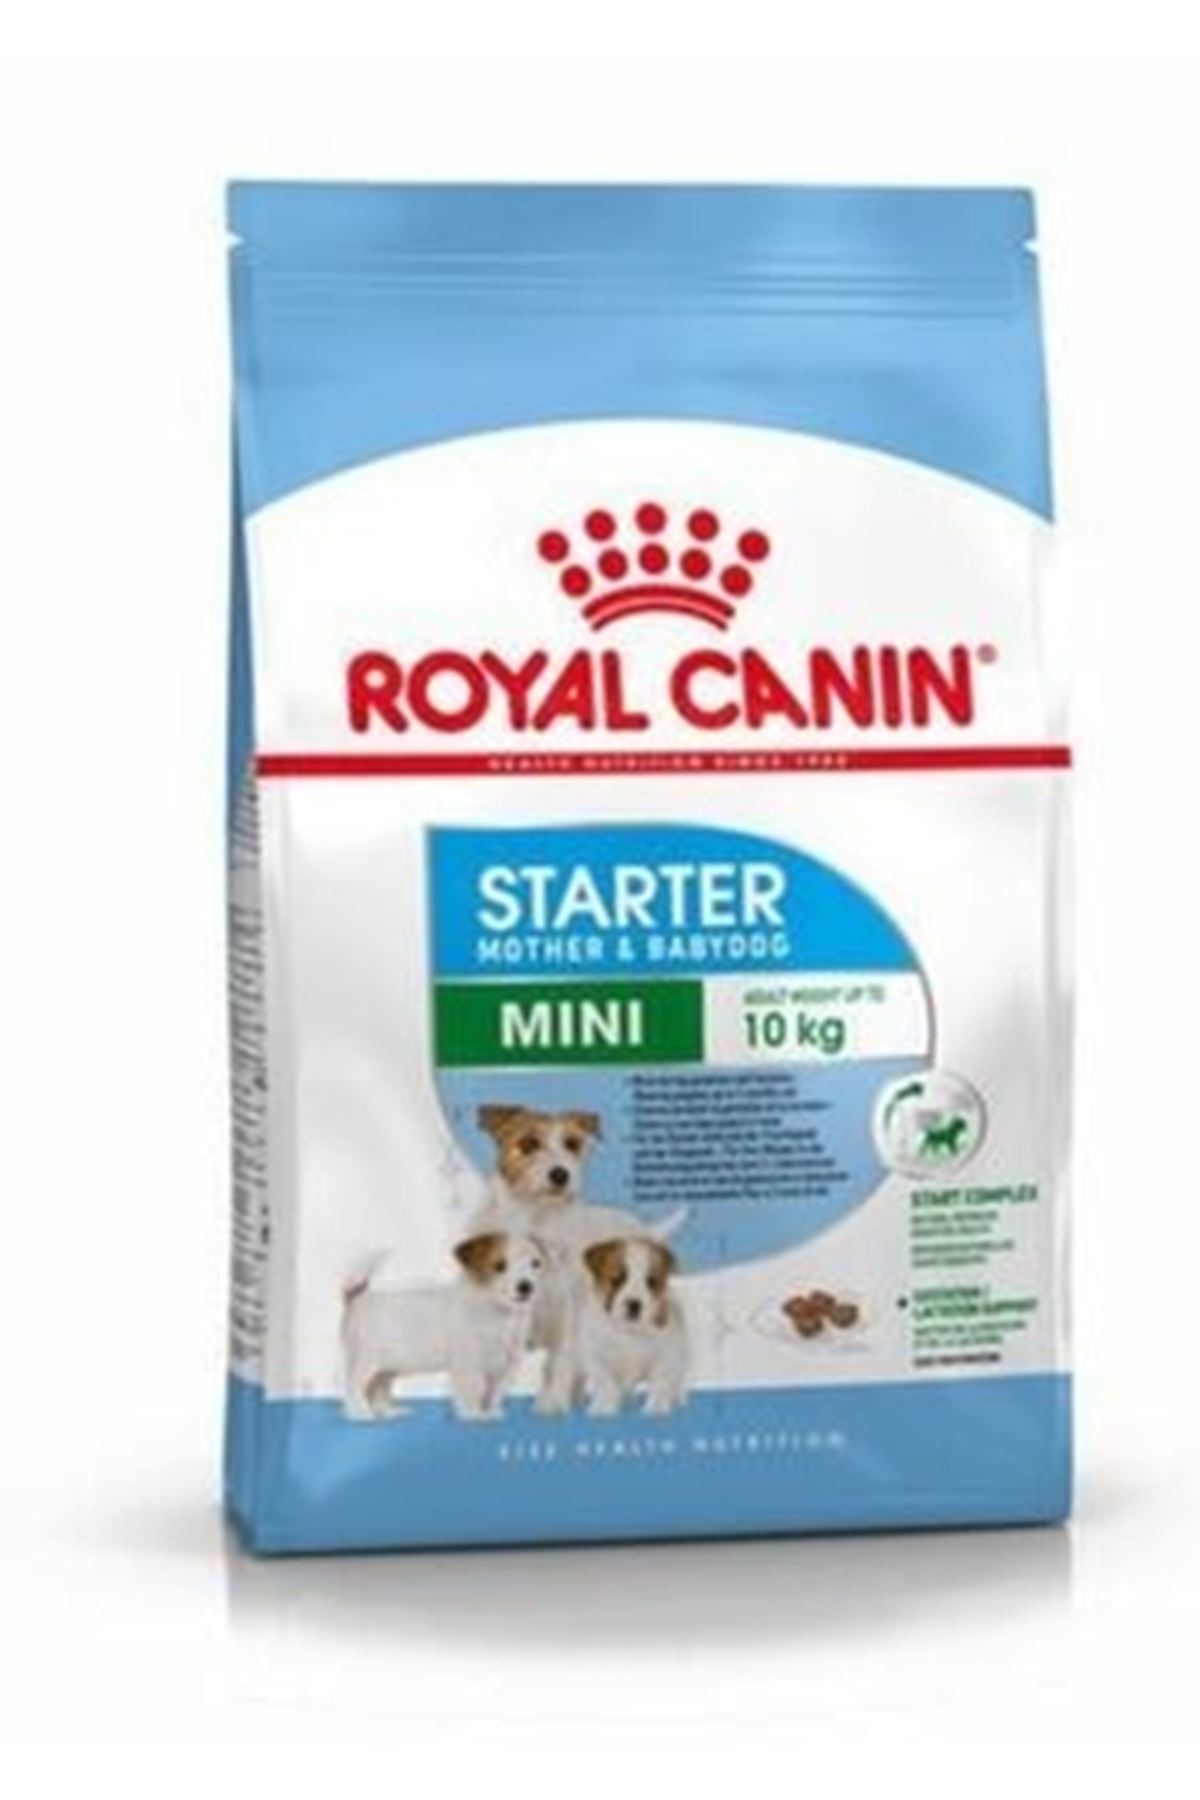 Royal Canin Mini Starter Köpek Maması 1 kg ACIK MAMA